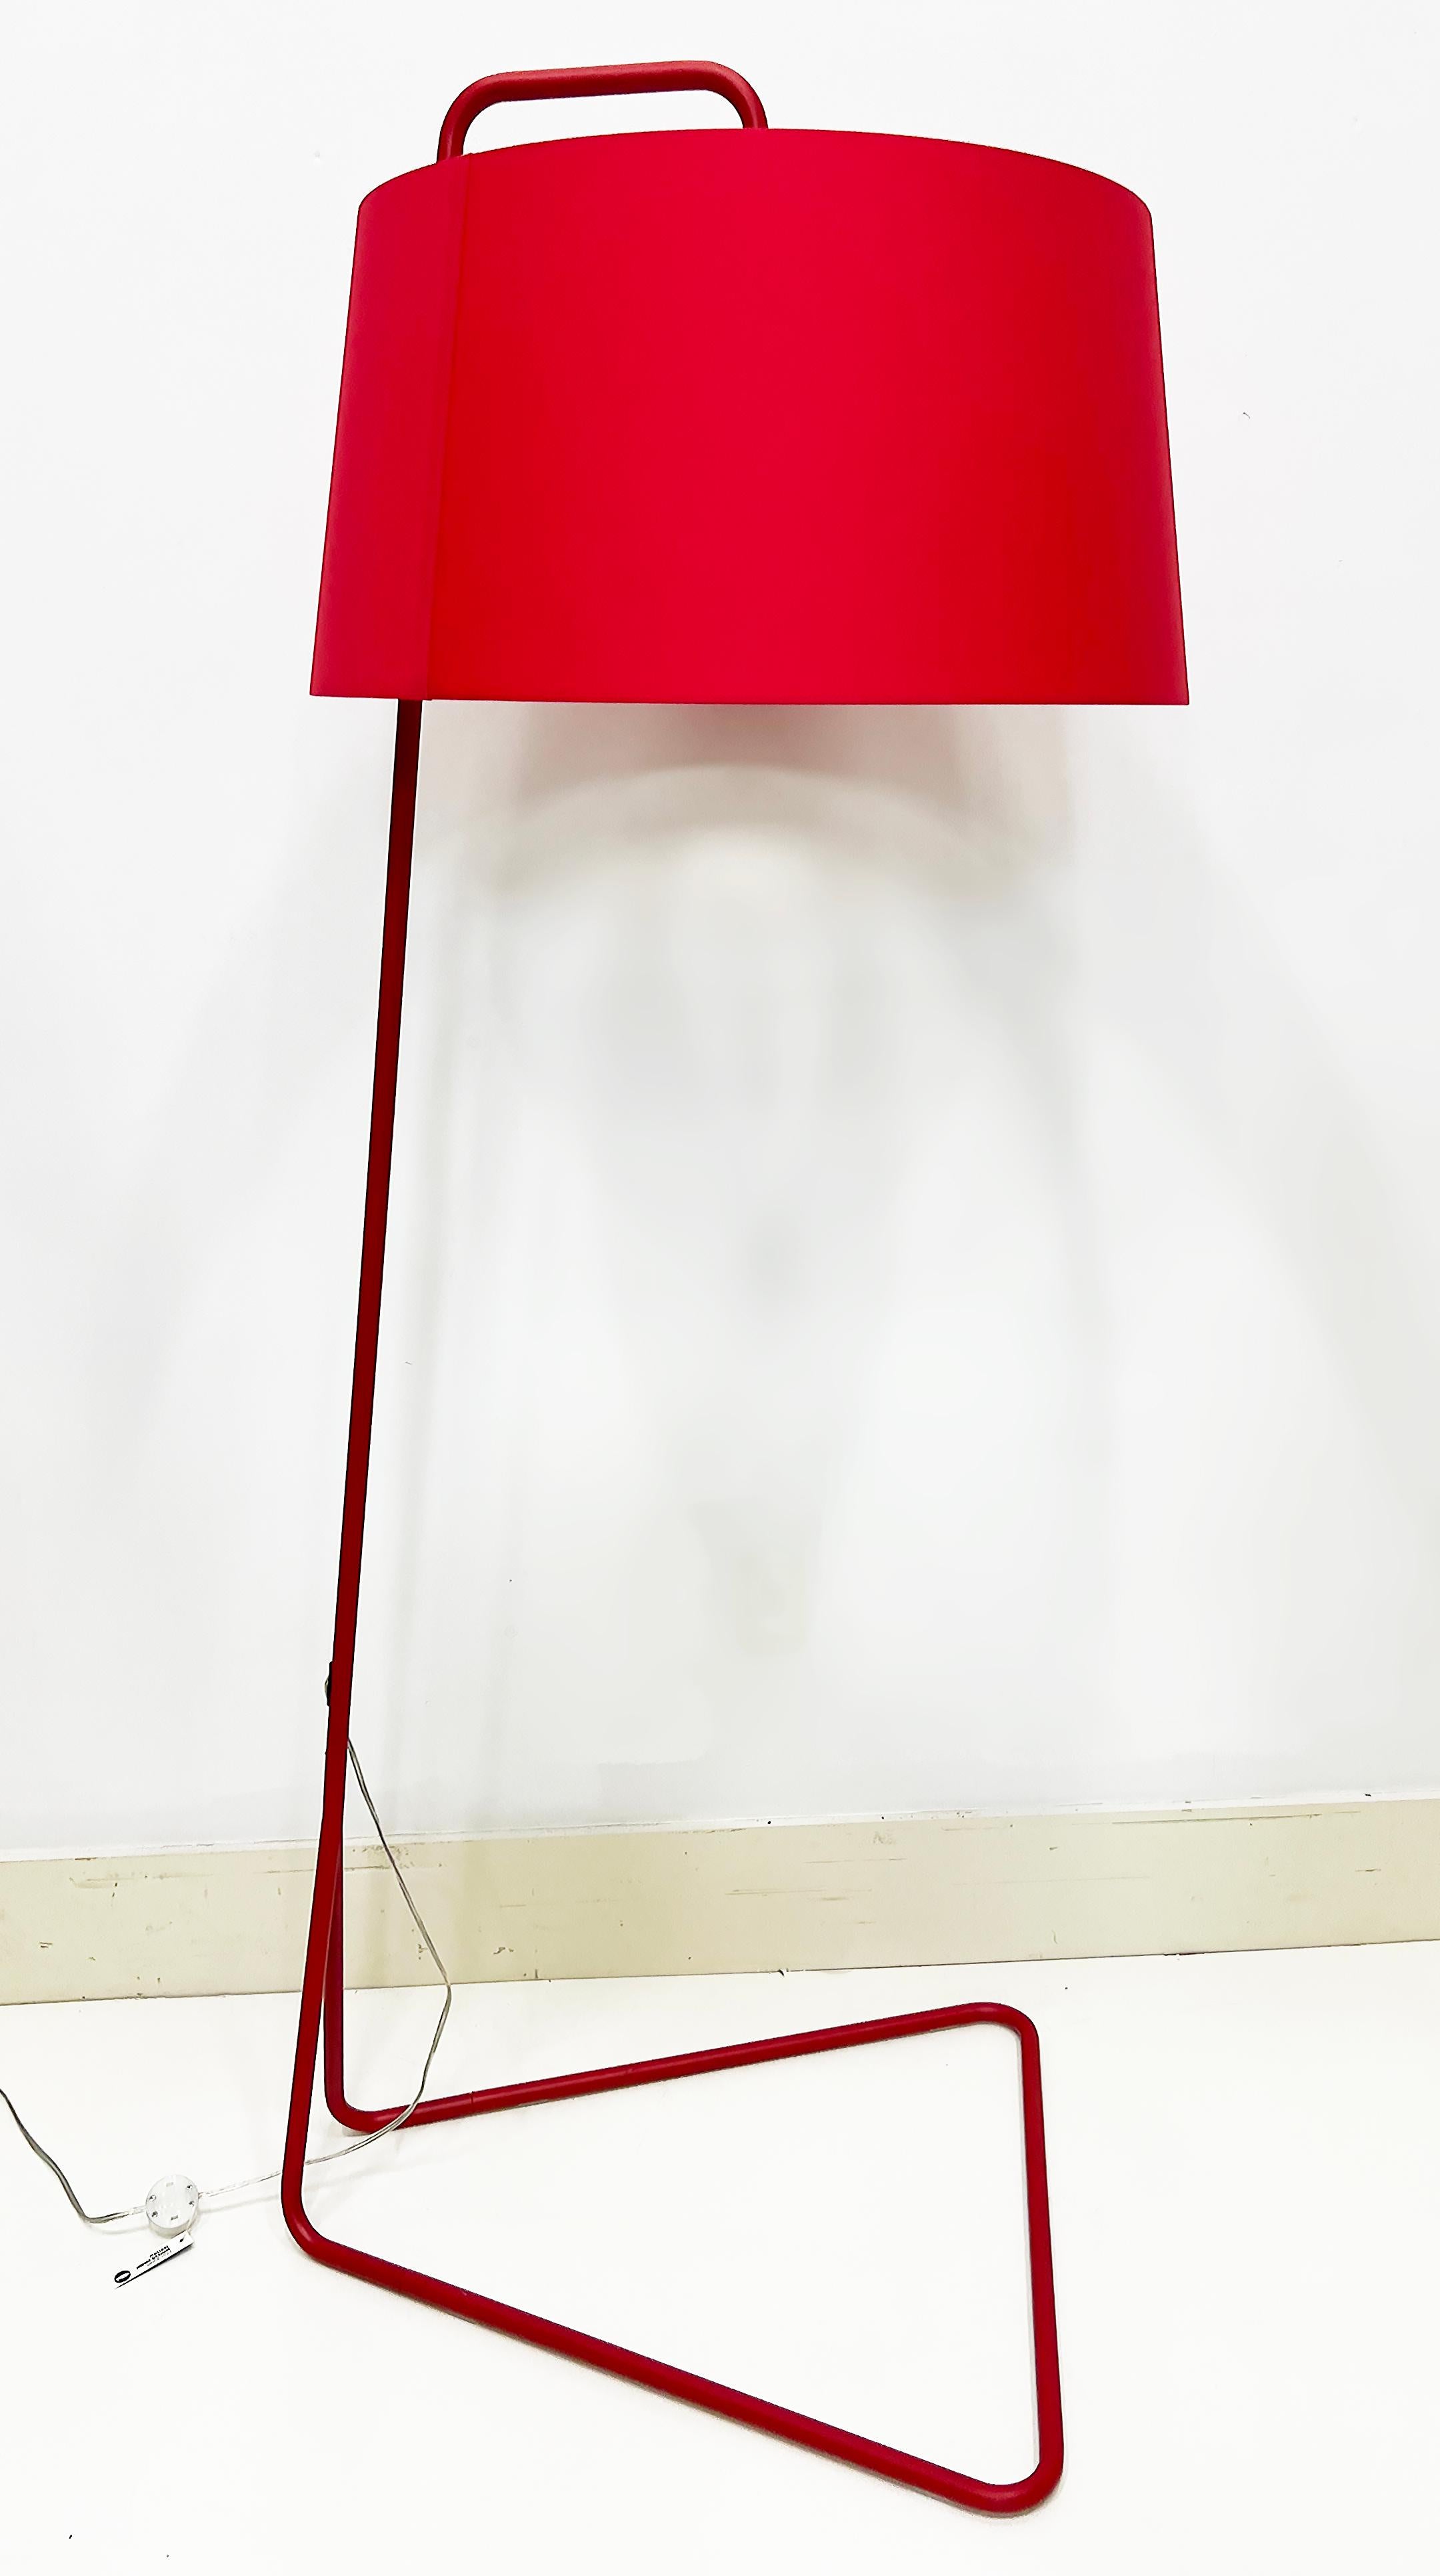 Wie neu Calligaris Sextans Stehleuchte in Rot aus Italien

Zum Verkauf angeboten wird eine Calligaris Sextans Modell Stehlampe Metall Stehlampe in rot mit einem großen roten Trommel Schatten beendet.  Die Sextans Pendelleuchte ist mit einem großen,